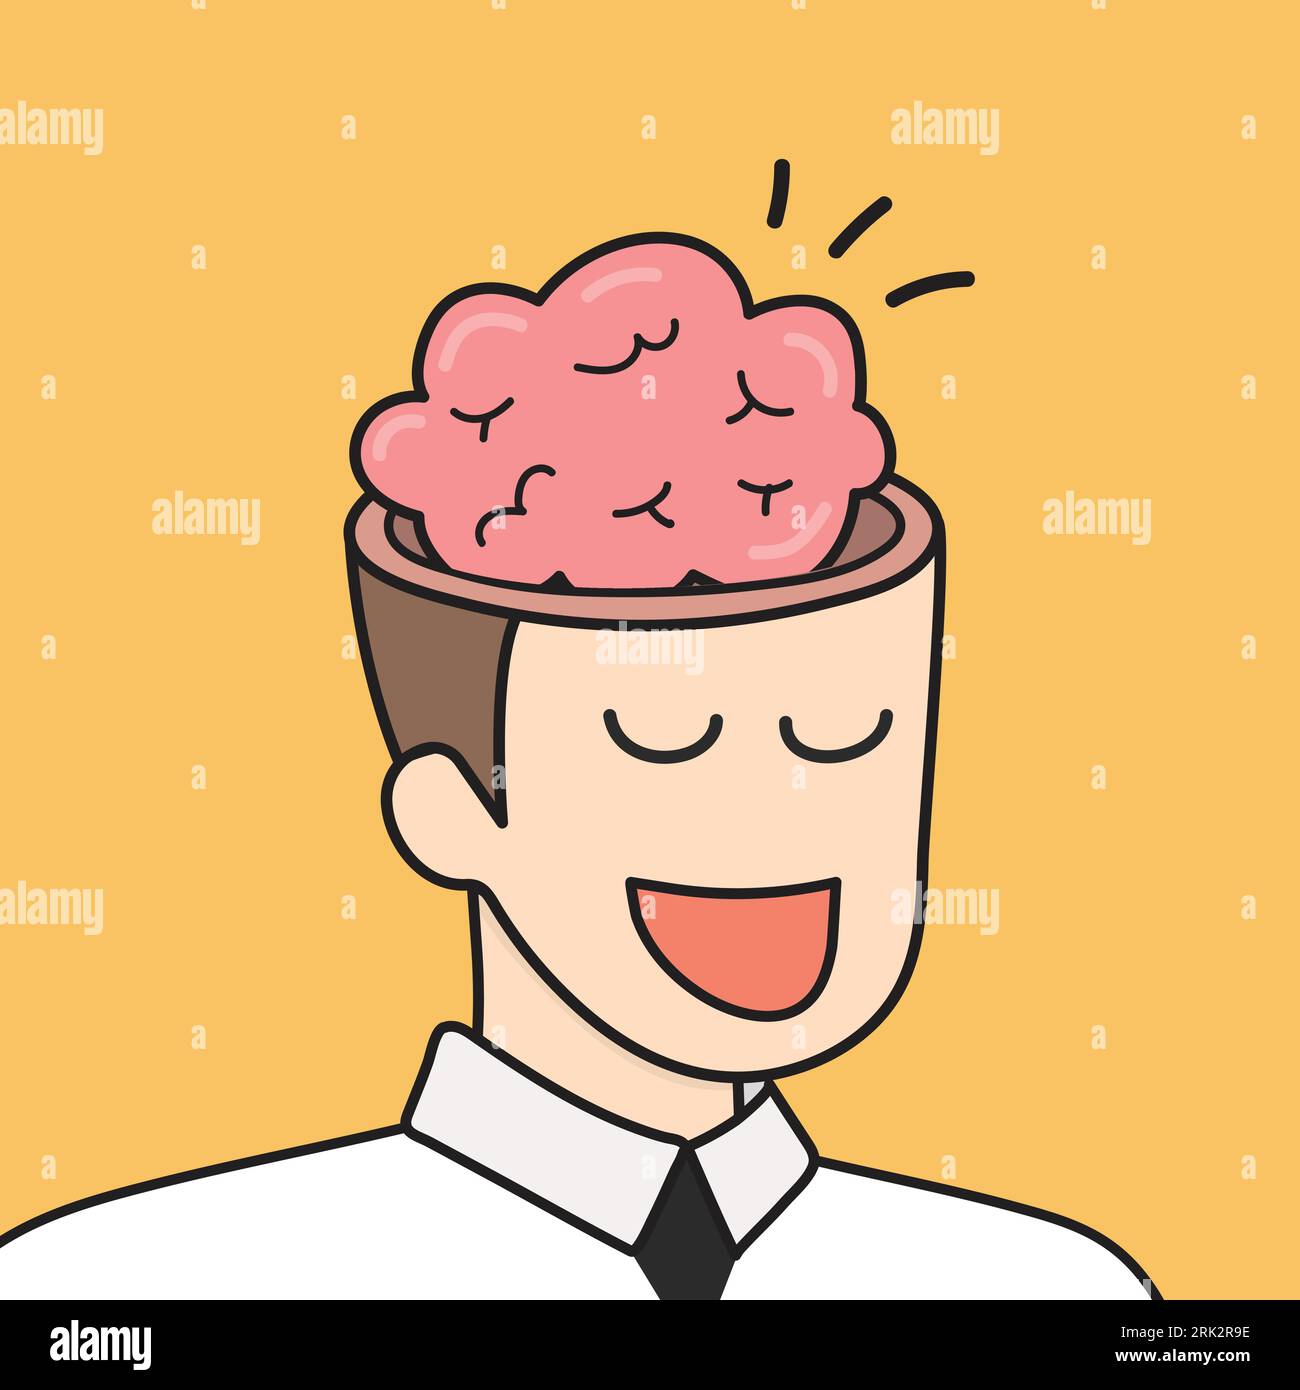 Das Gehirn im Geschäftsmannkopf-Doodle-Stil. Vektorillustration für Geschäftsidee Stock Vektor